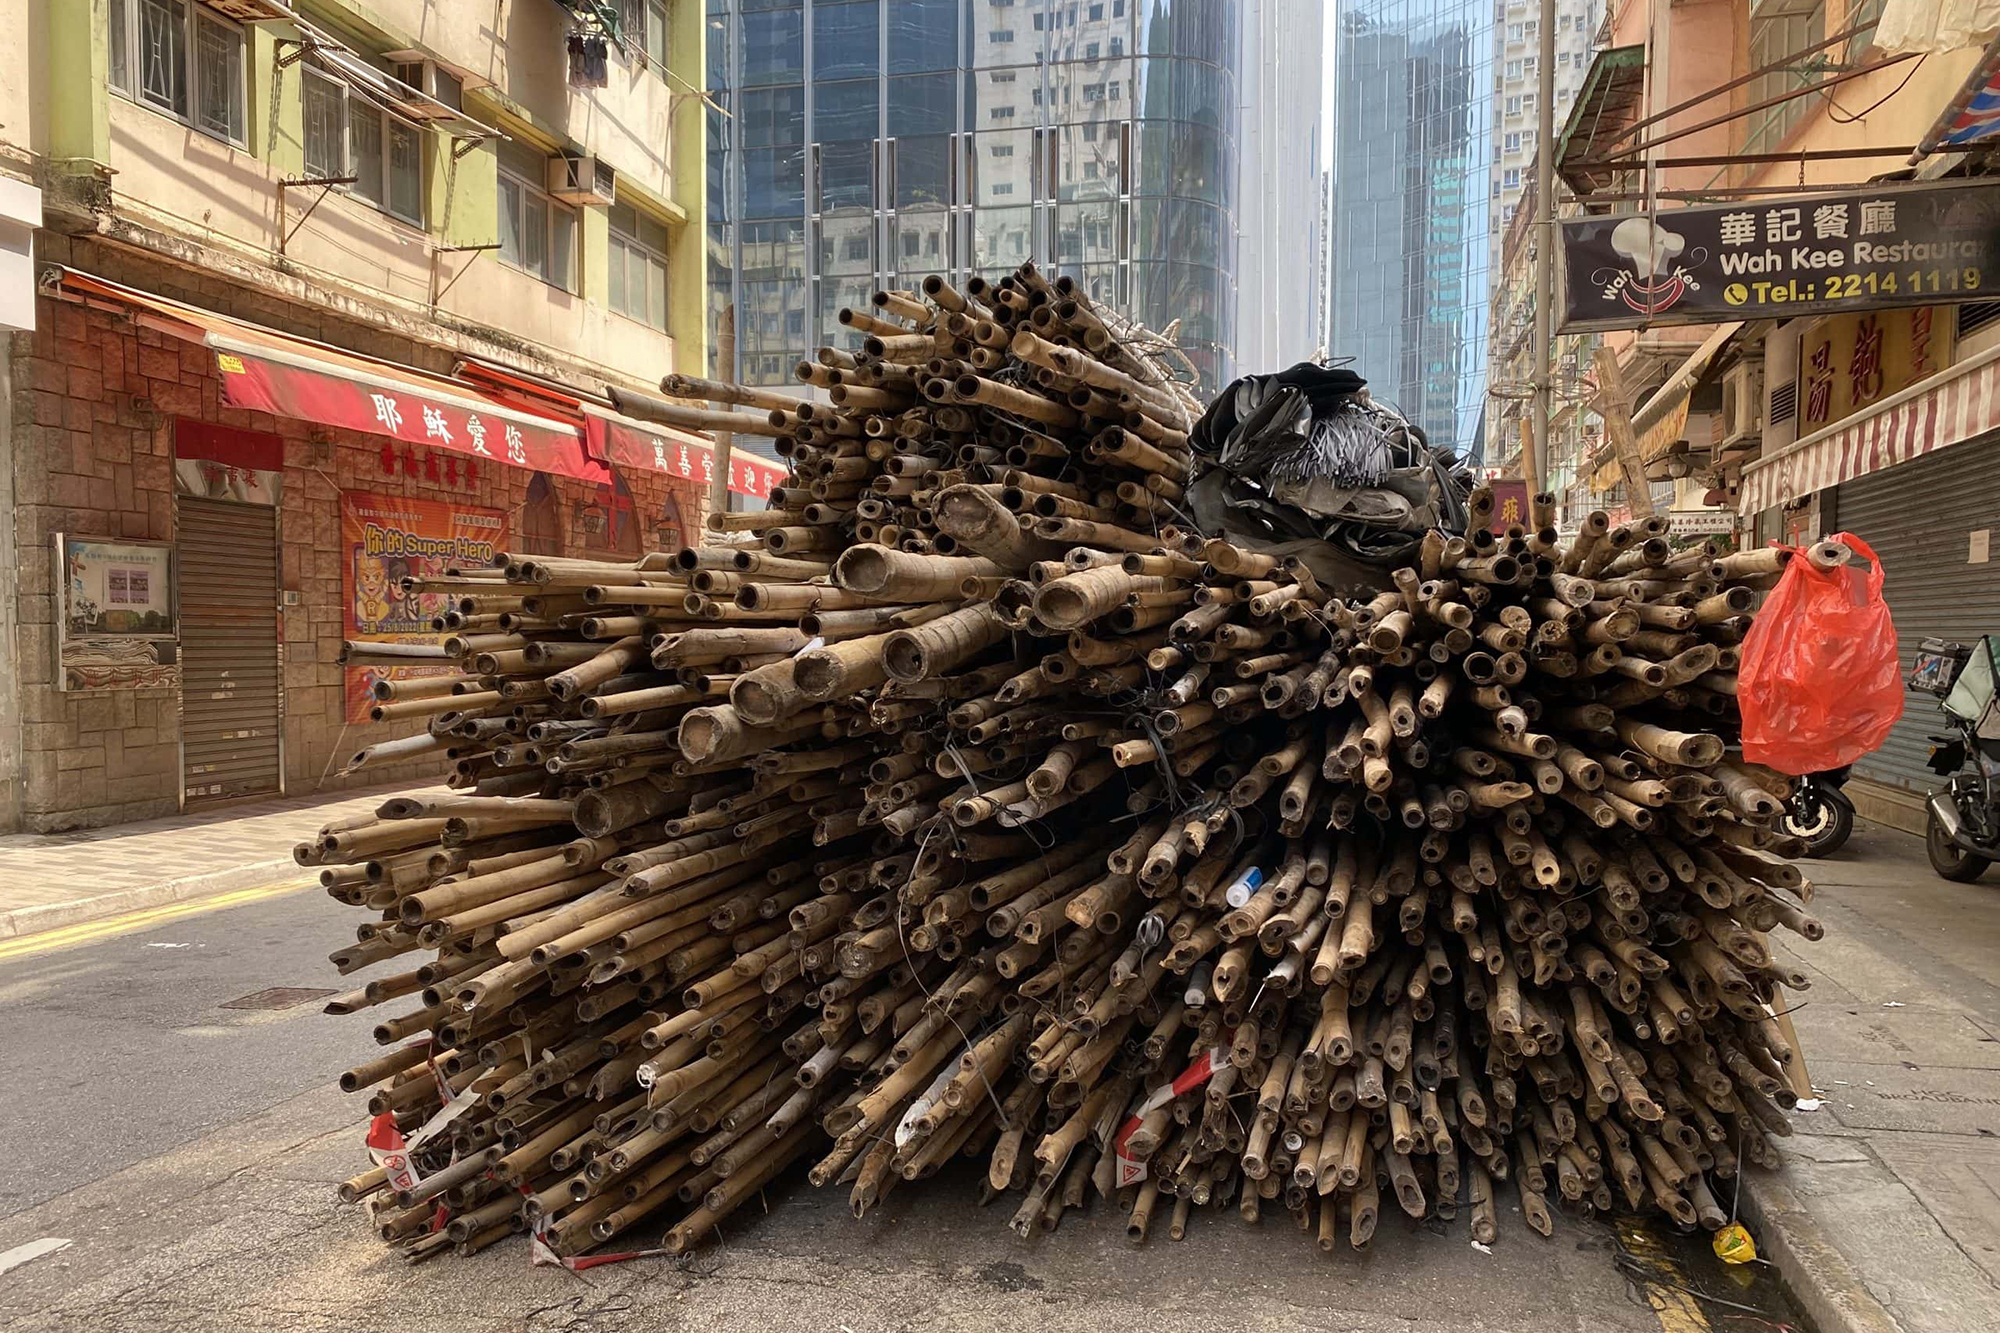 bamboo pile, Hong Kong